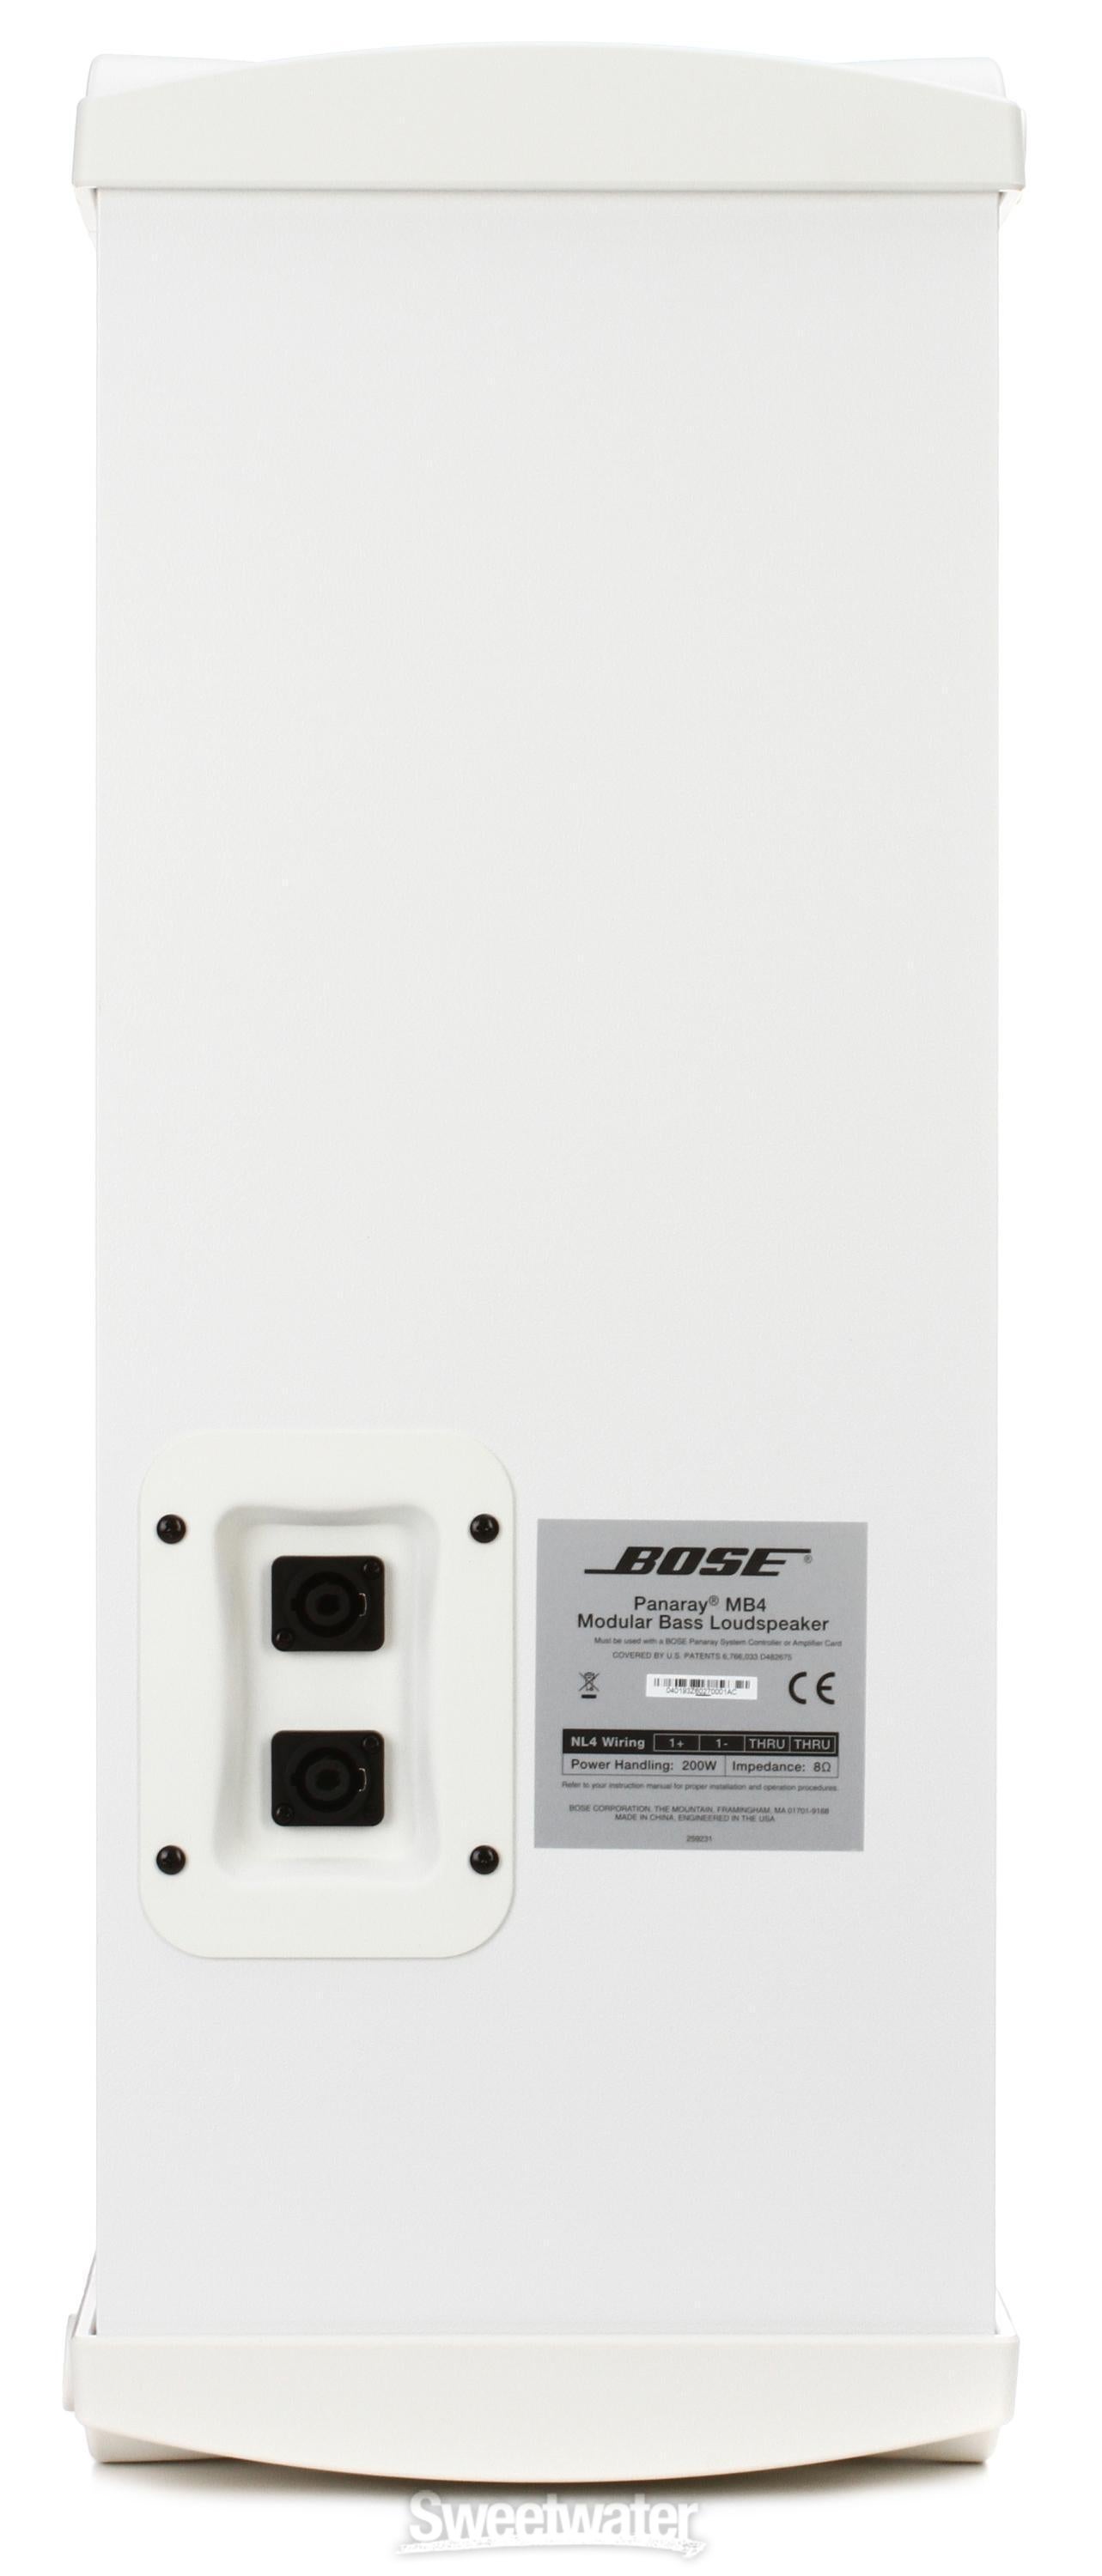 Bose Professional Panaray MB4 Modular Bass Loudspeaker - White